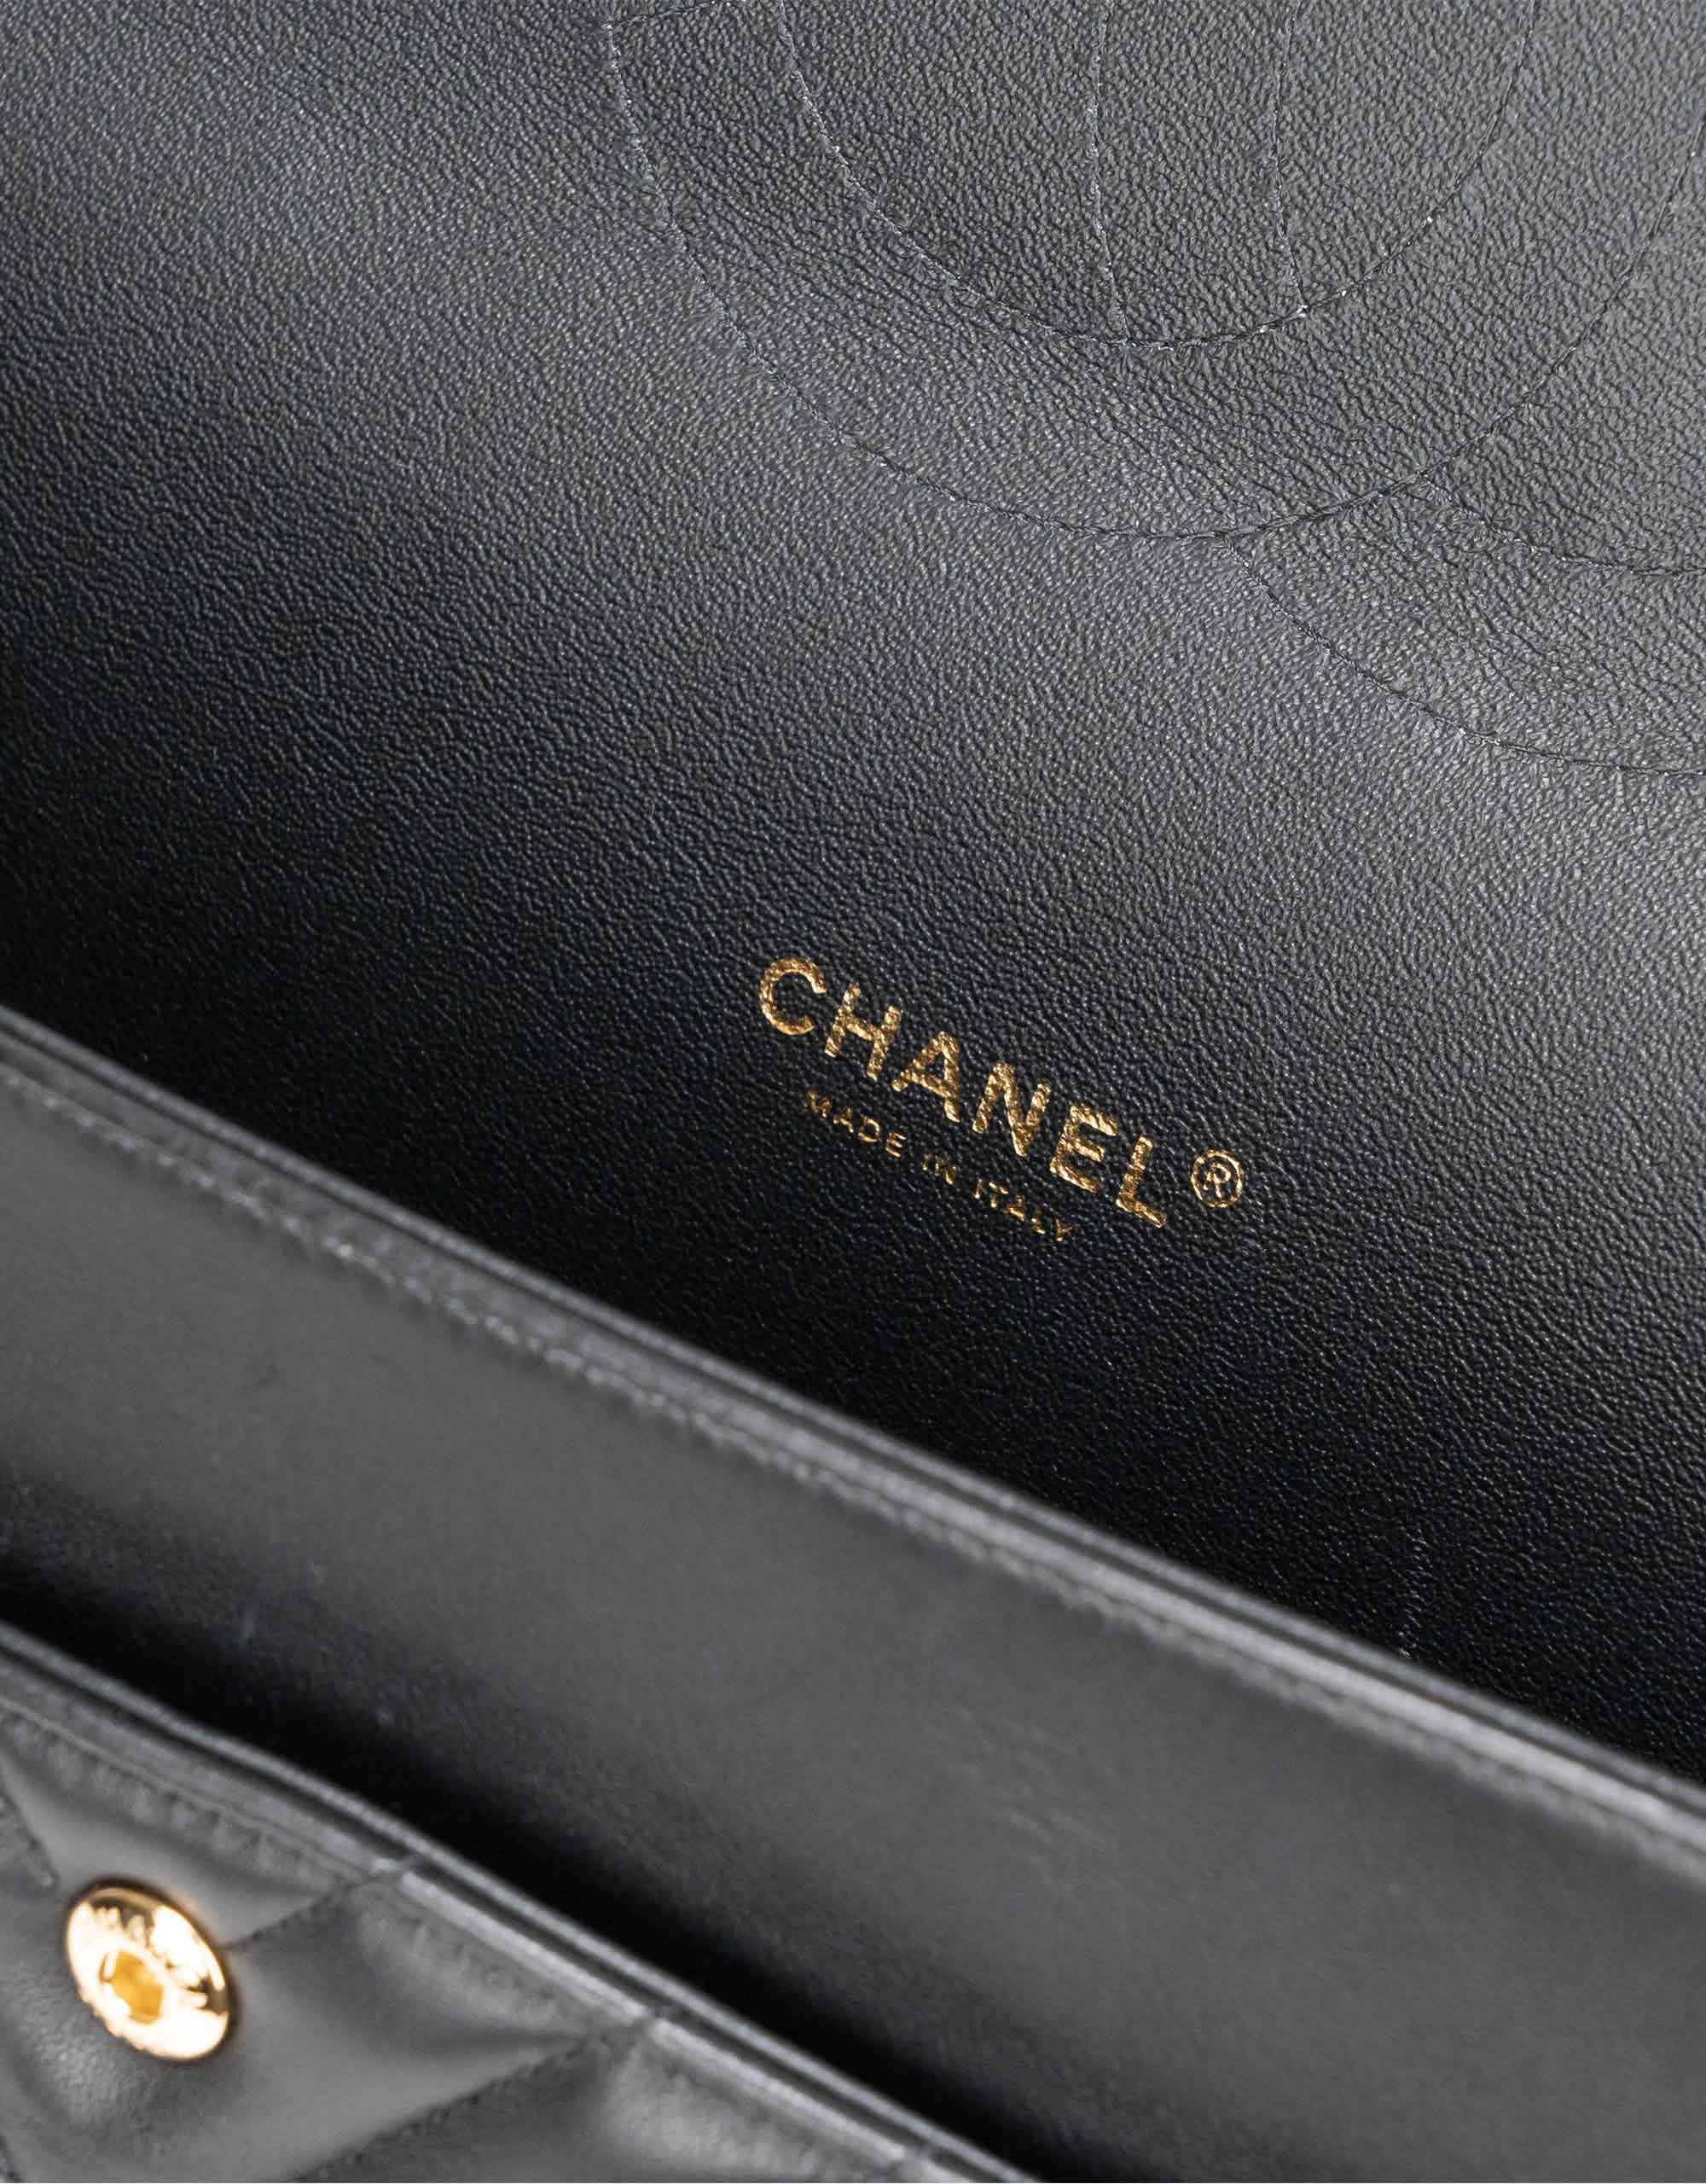 Chanel Maxi All Black Chevron - NEW!